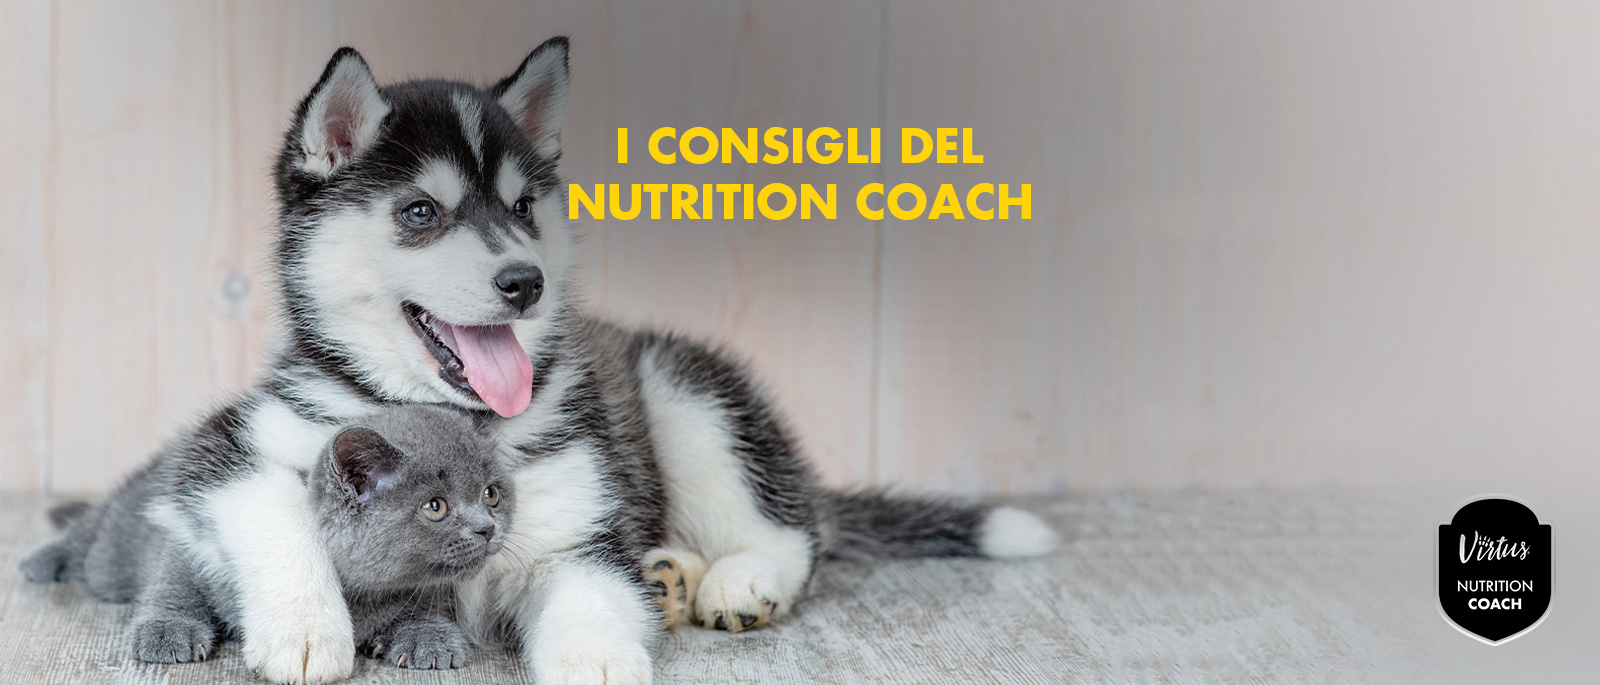 L’importanza della nutrizione dei cuccioli e gattini